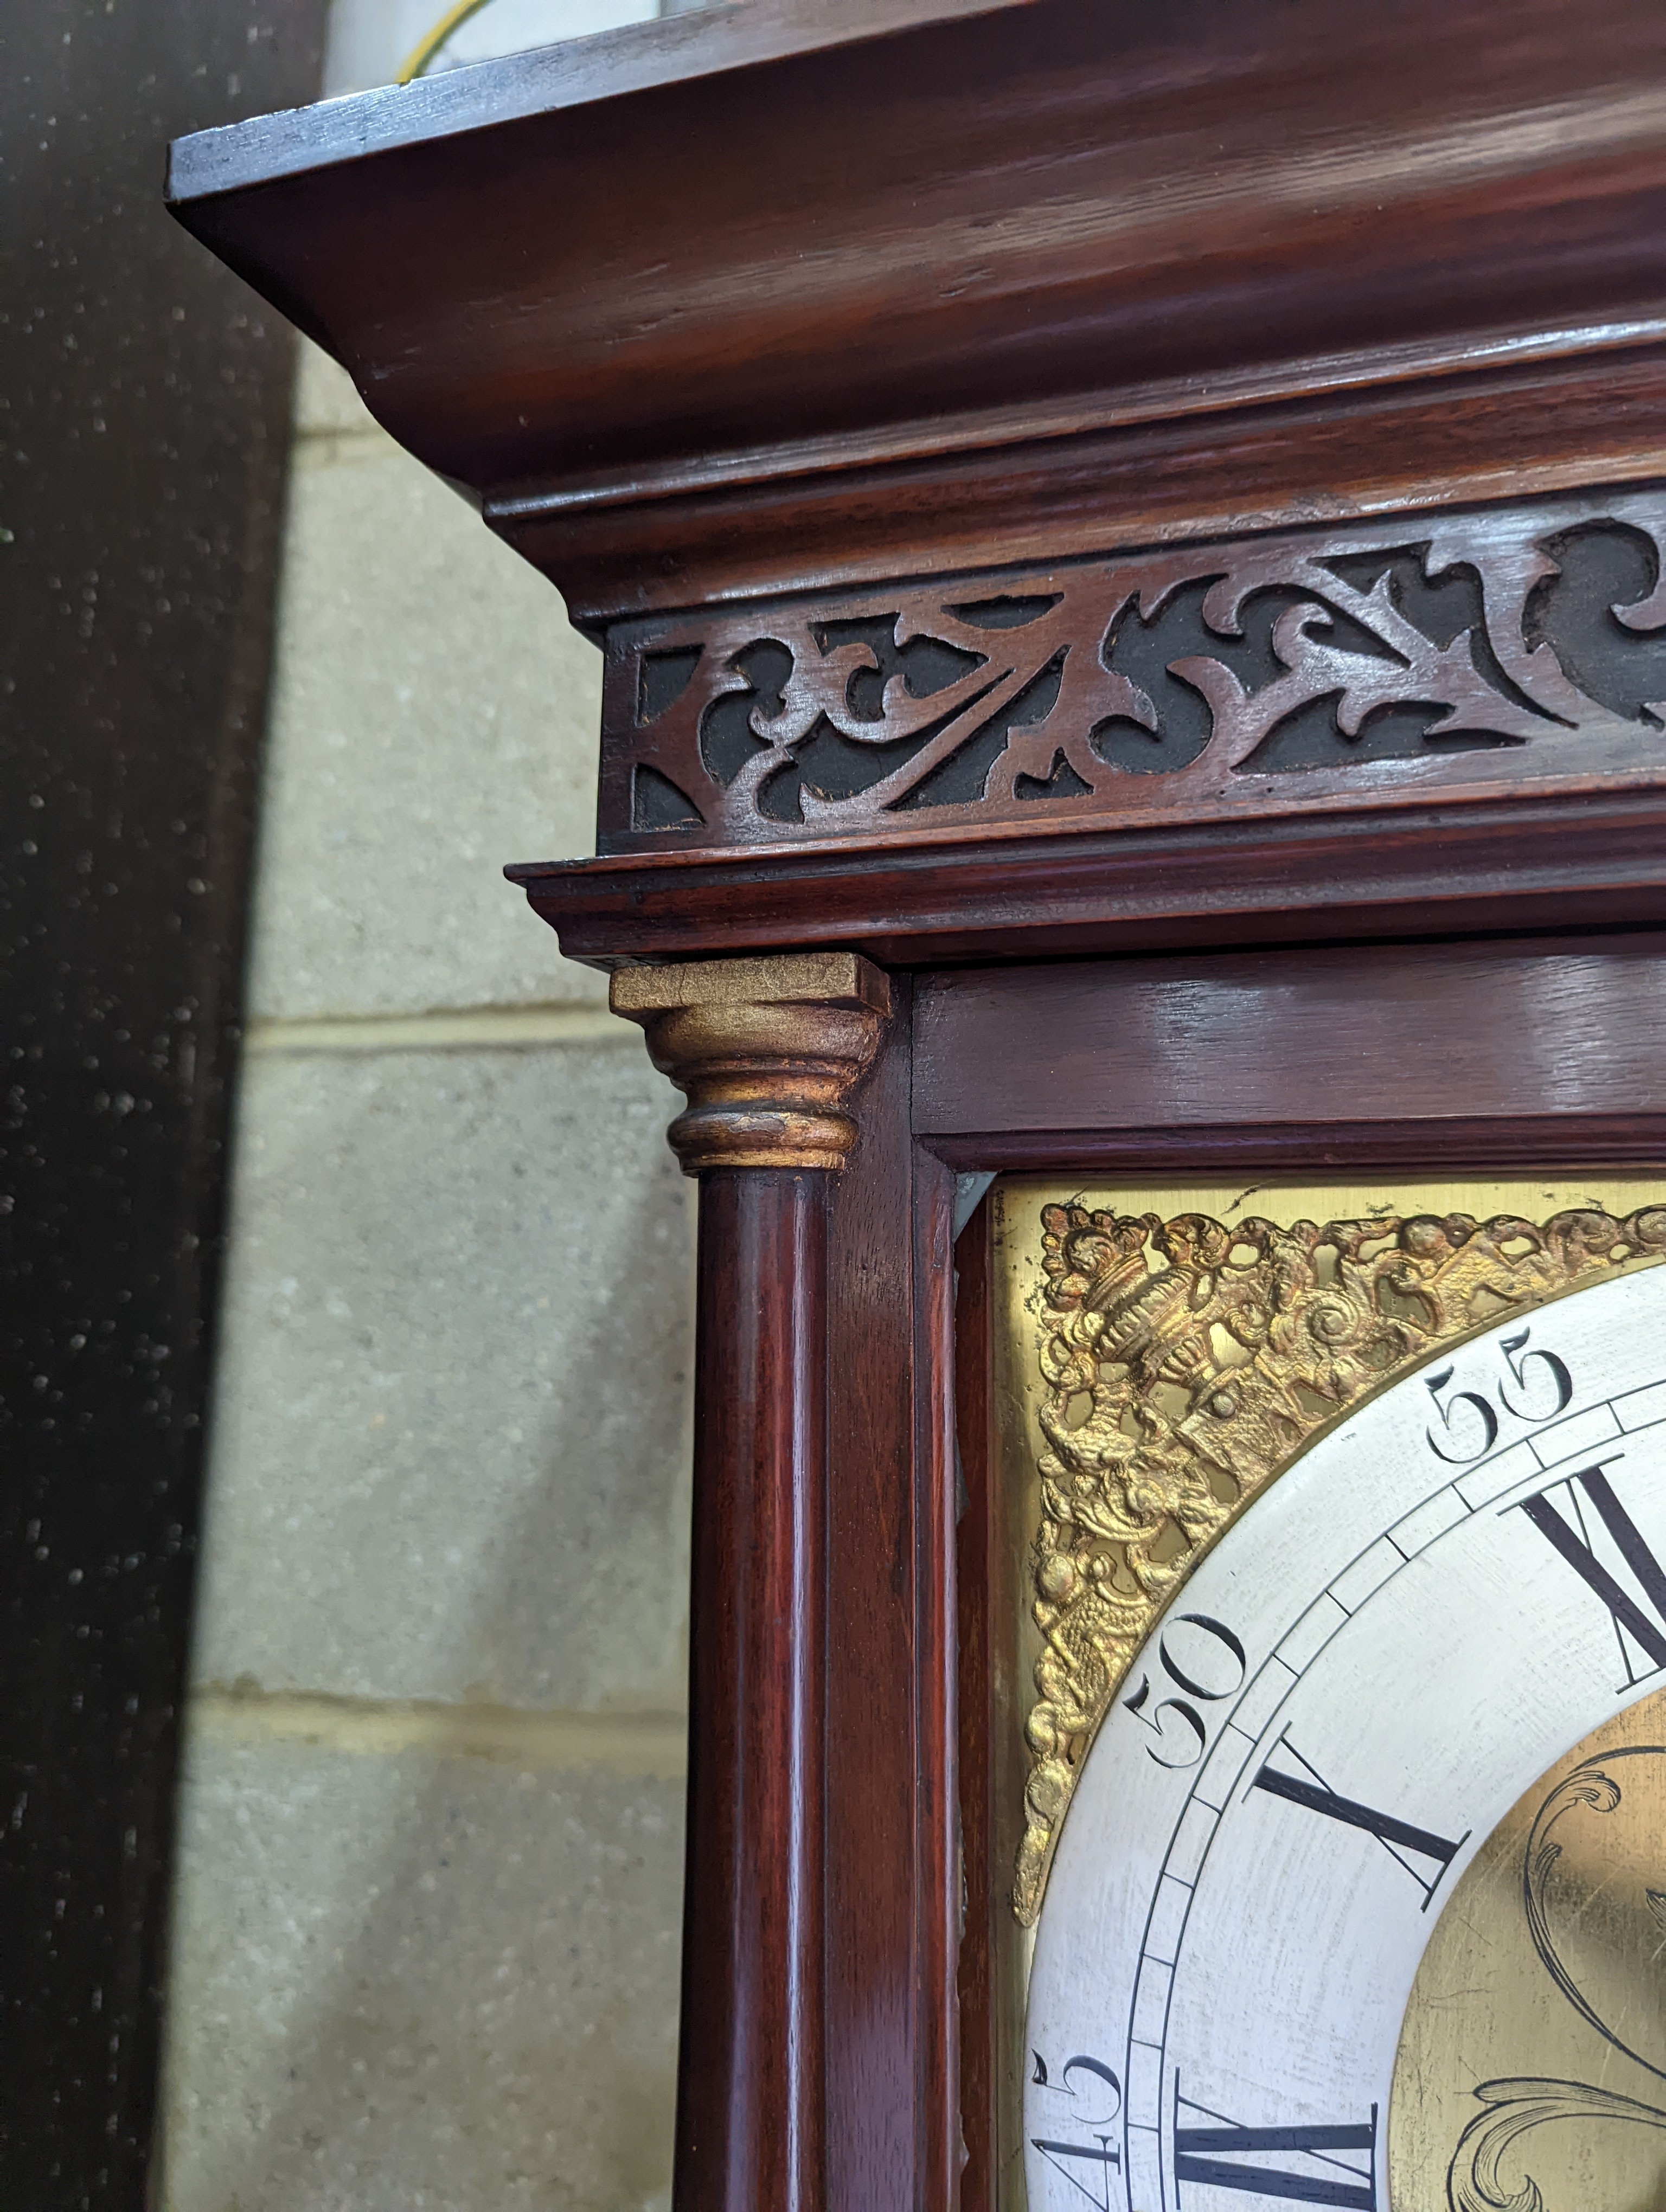 A George III mahogany 8 day longcase clock, marked John Masters, height 196cm